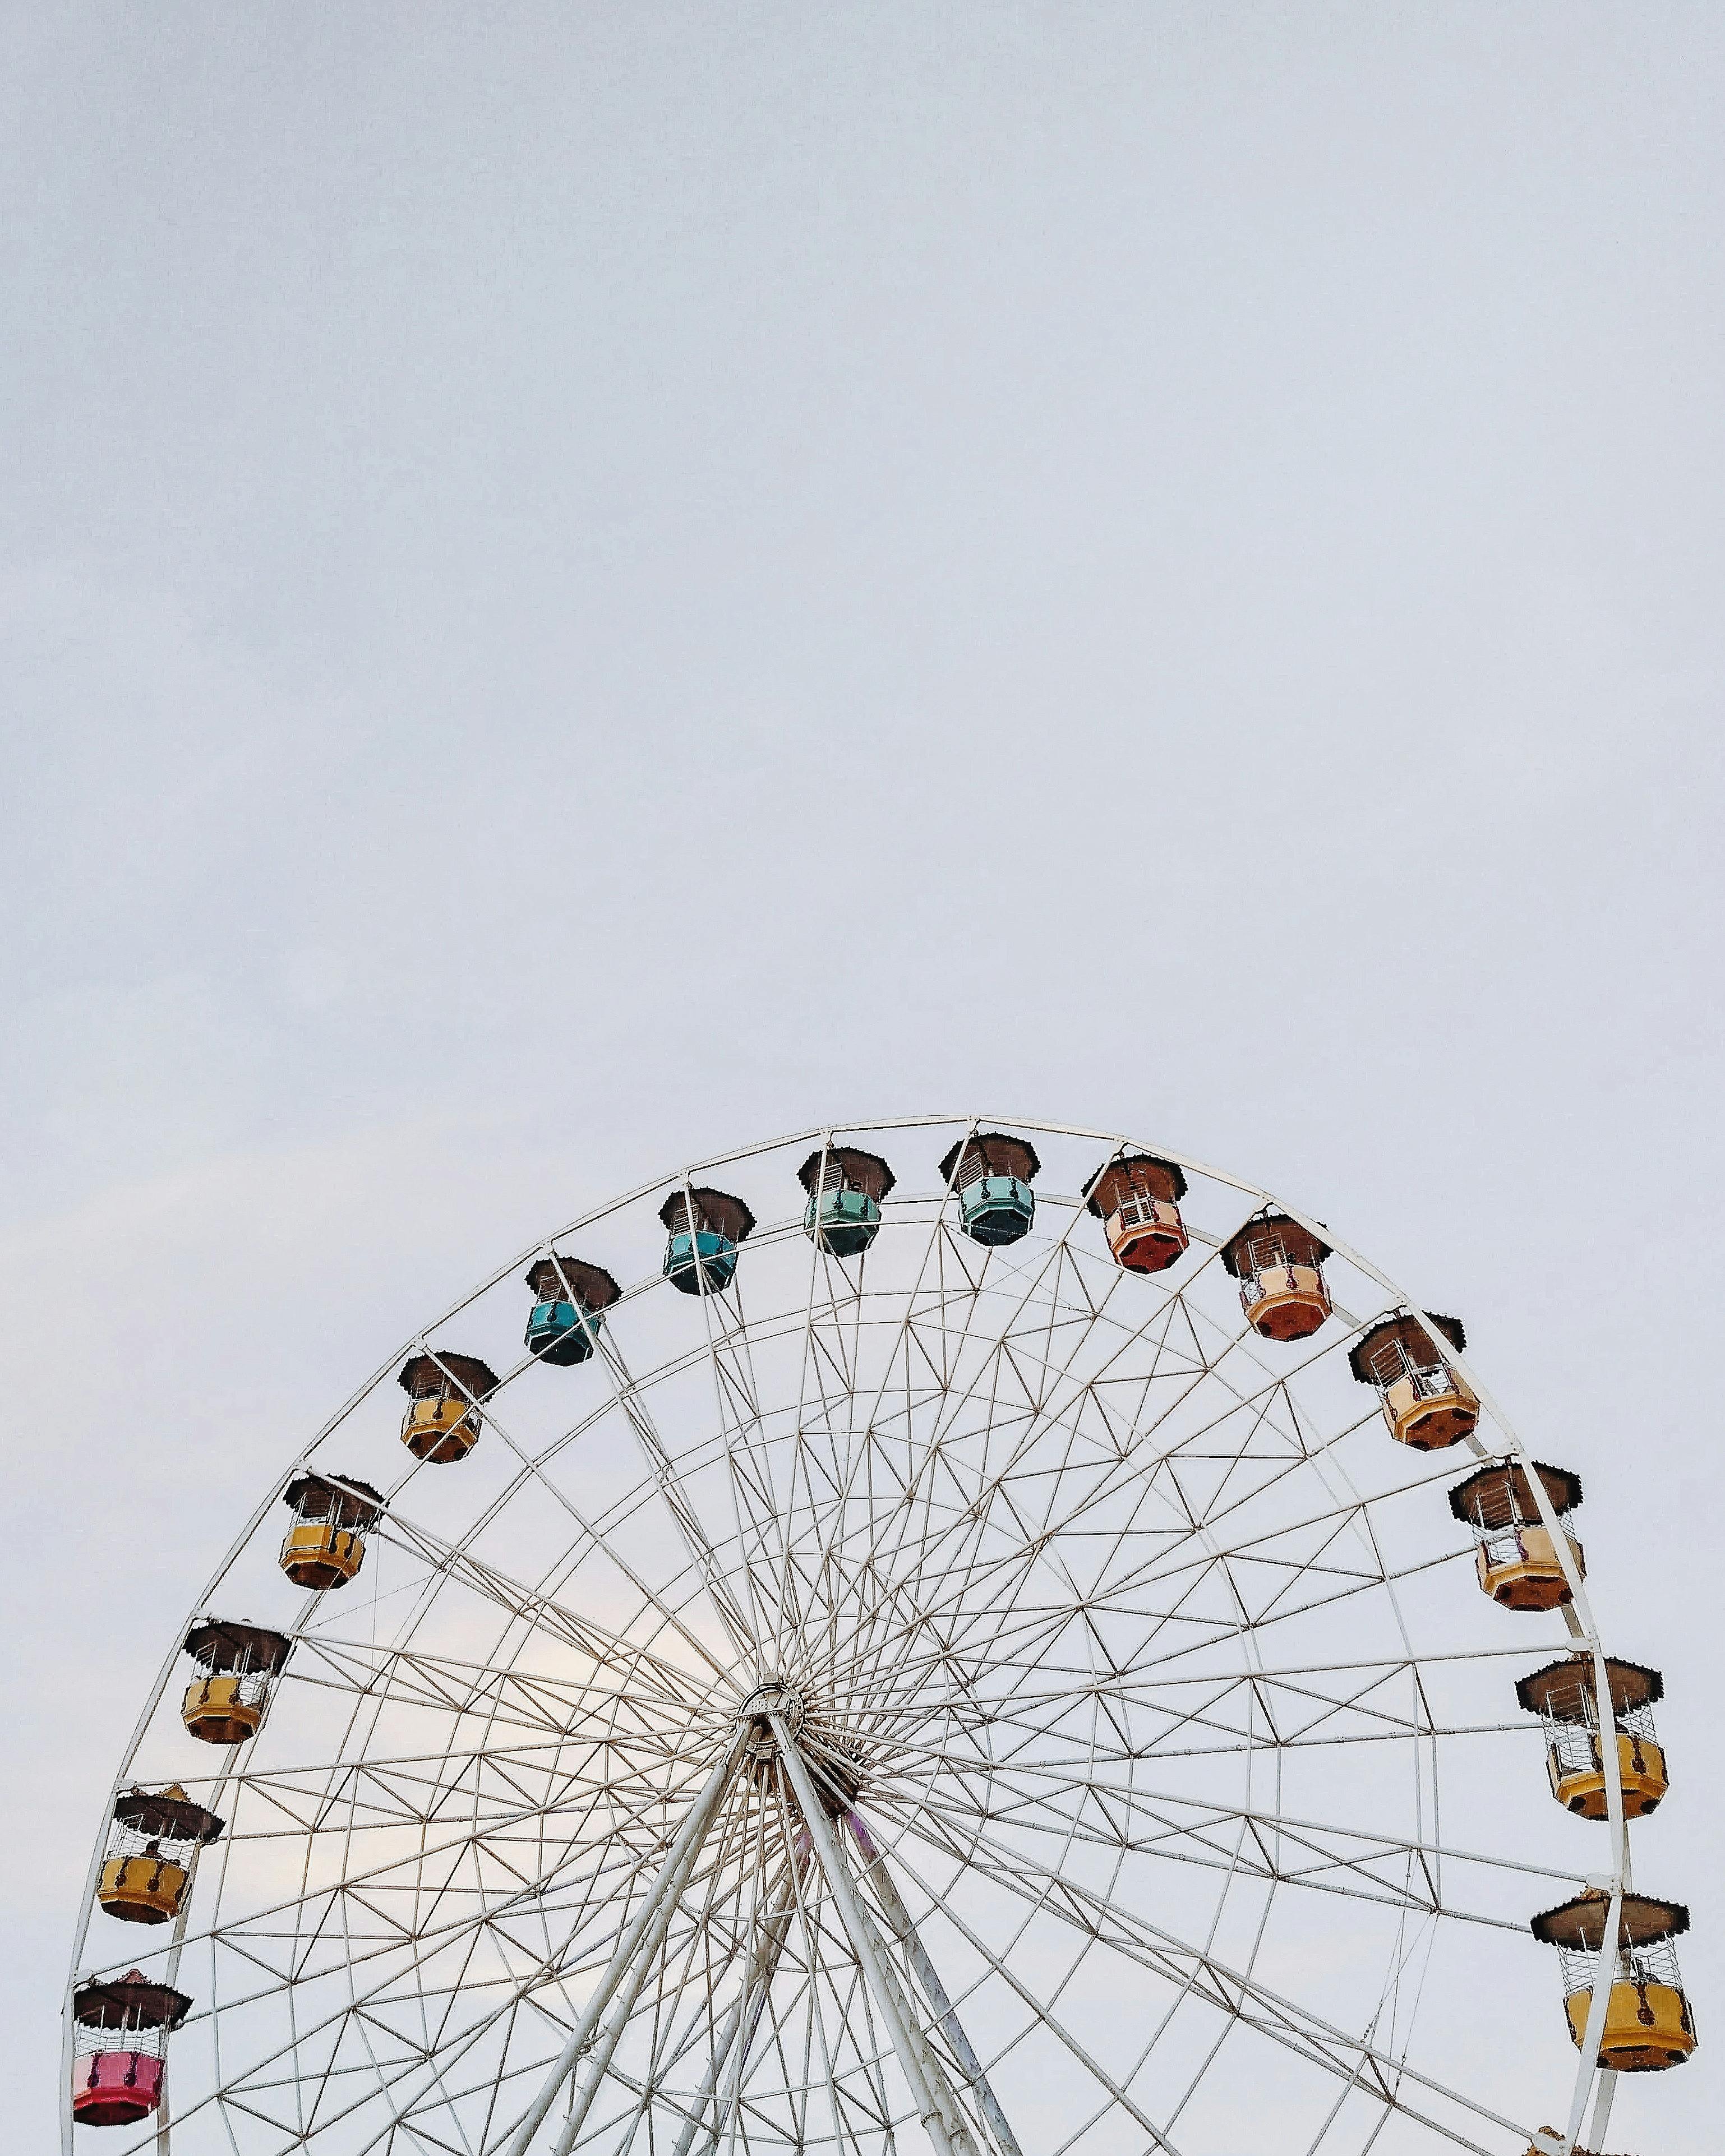 Yellow and White Ferris Wheel · Free Stock Photo